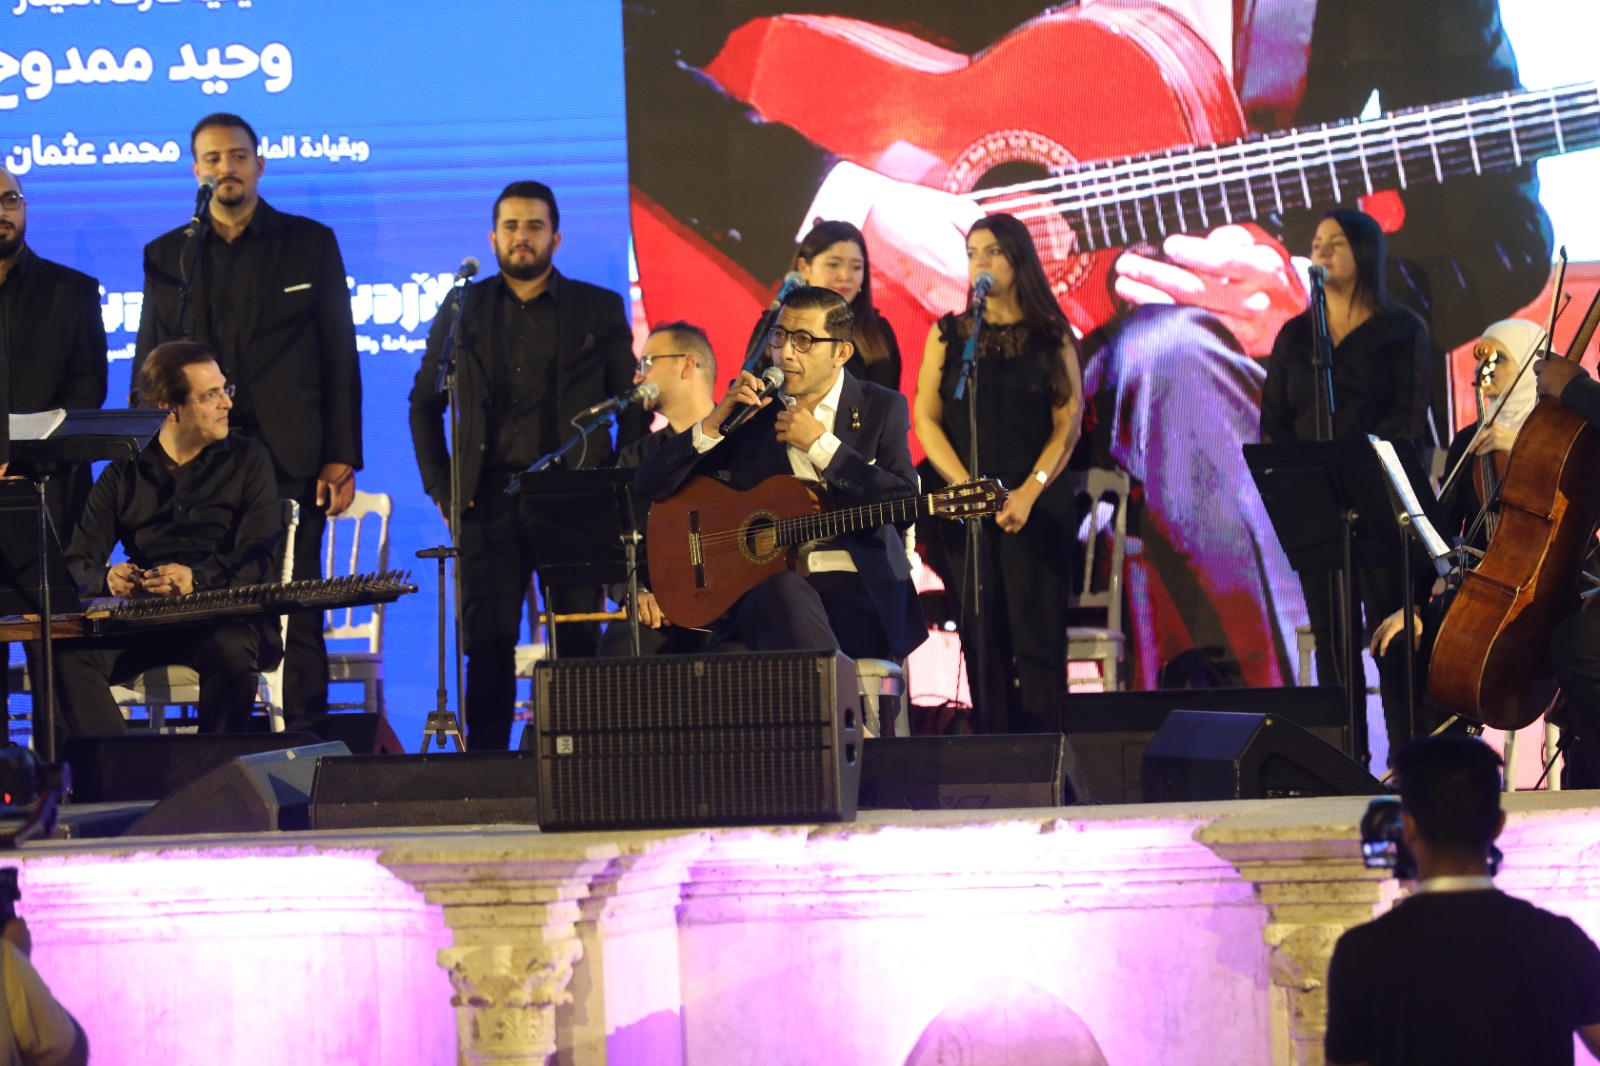 وزارة السياحة والآثار تنظم حفلاً موسيقياً للفنان وحيد ممدوح احتفاءً بيوم السياحة العالمي